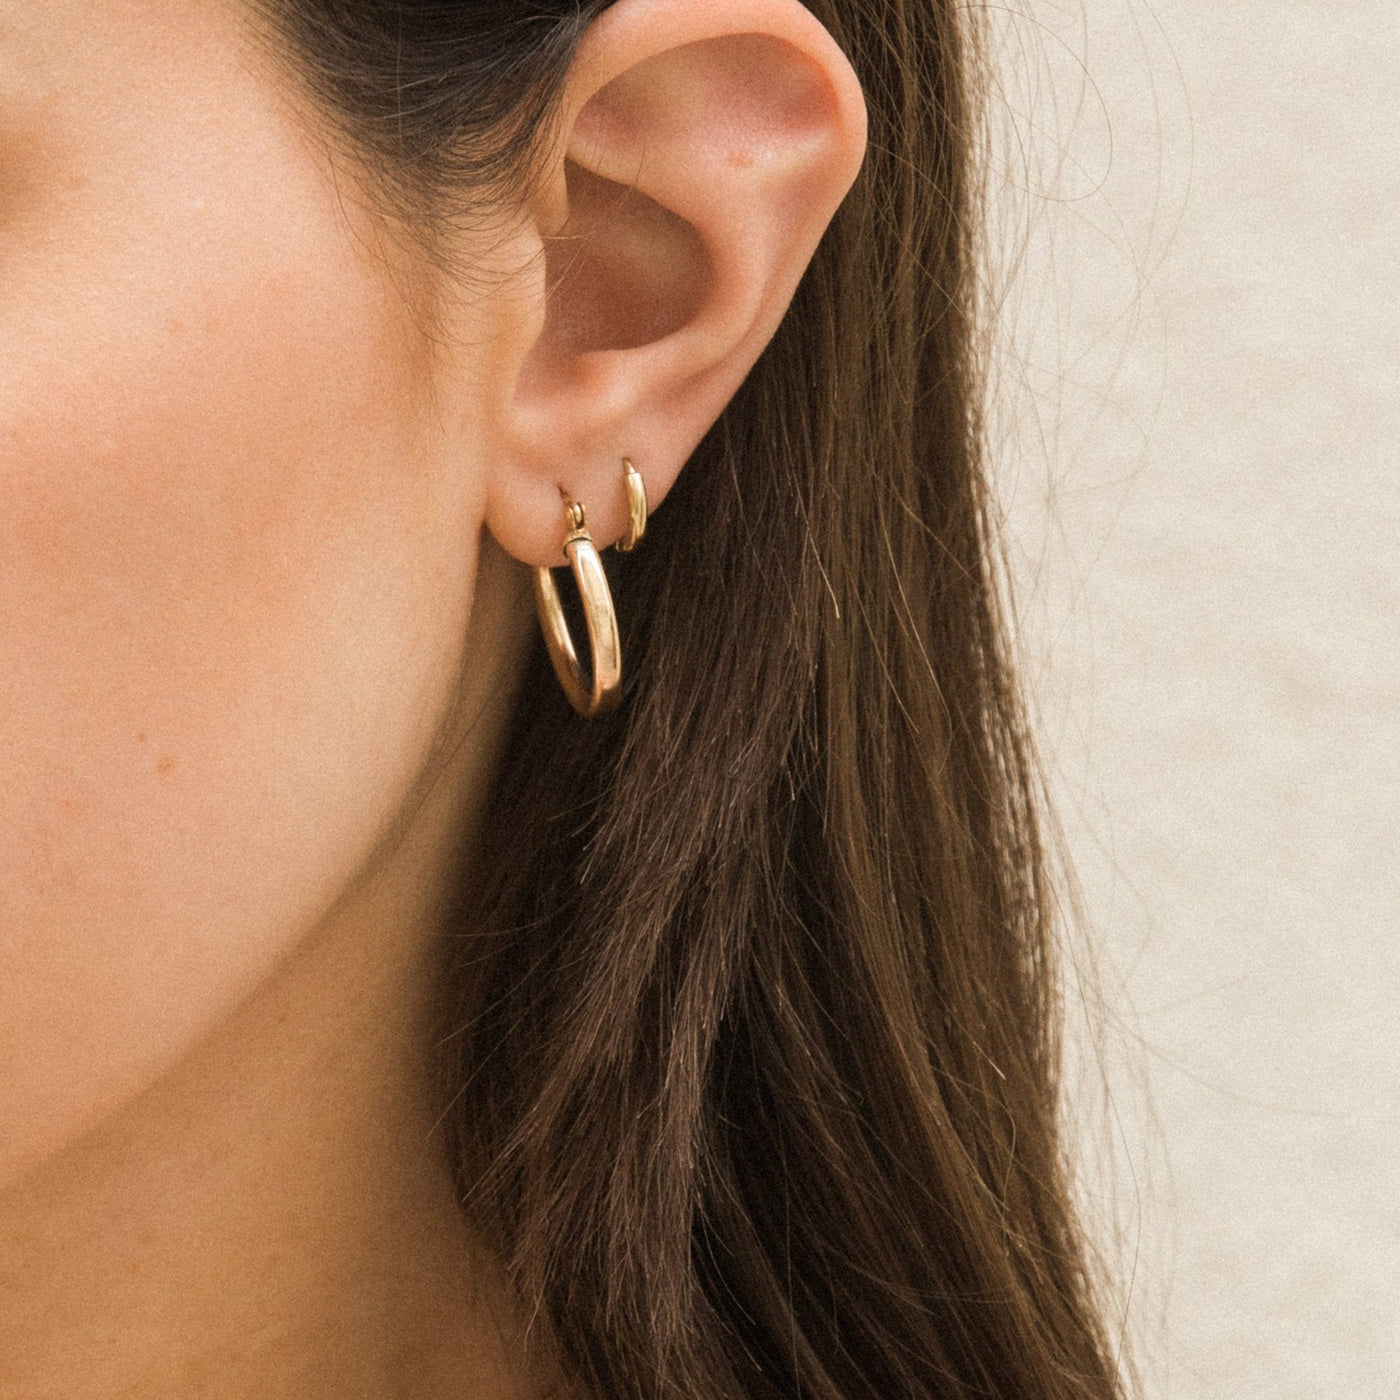 Huggie Hoop Earrings by Simple & Dainty Jewelry